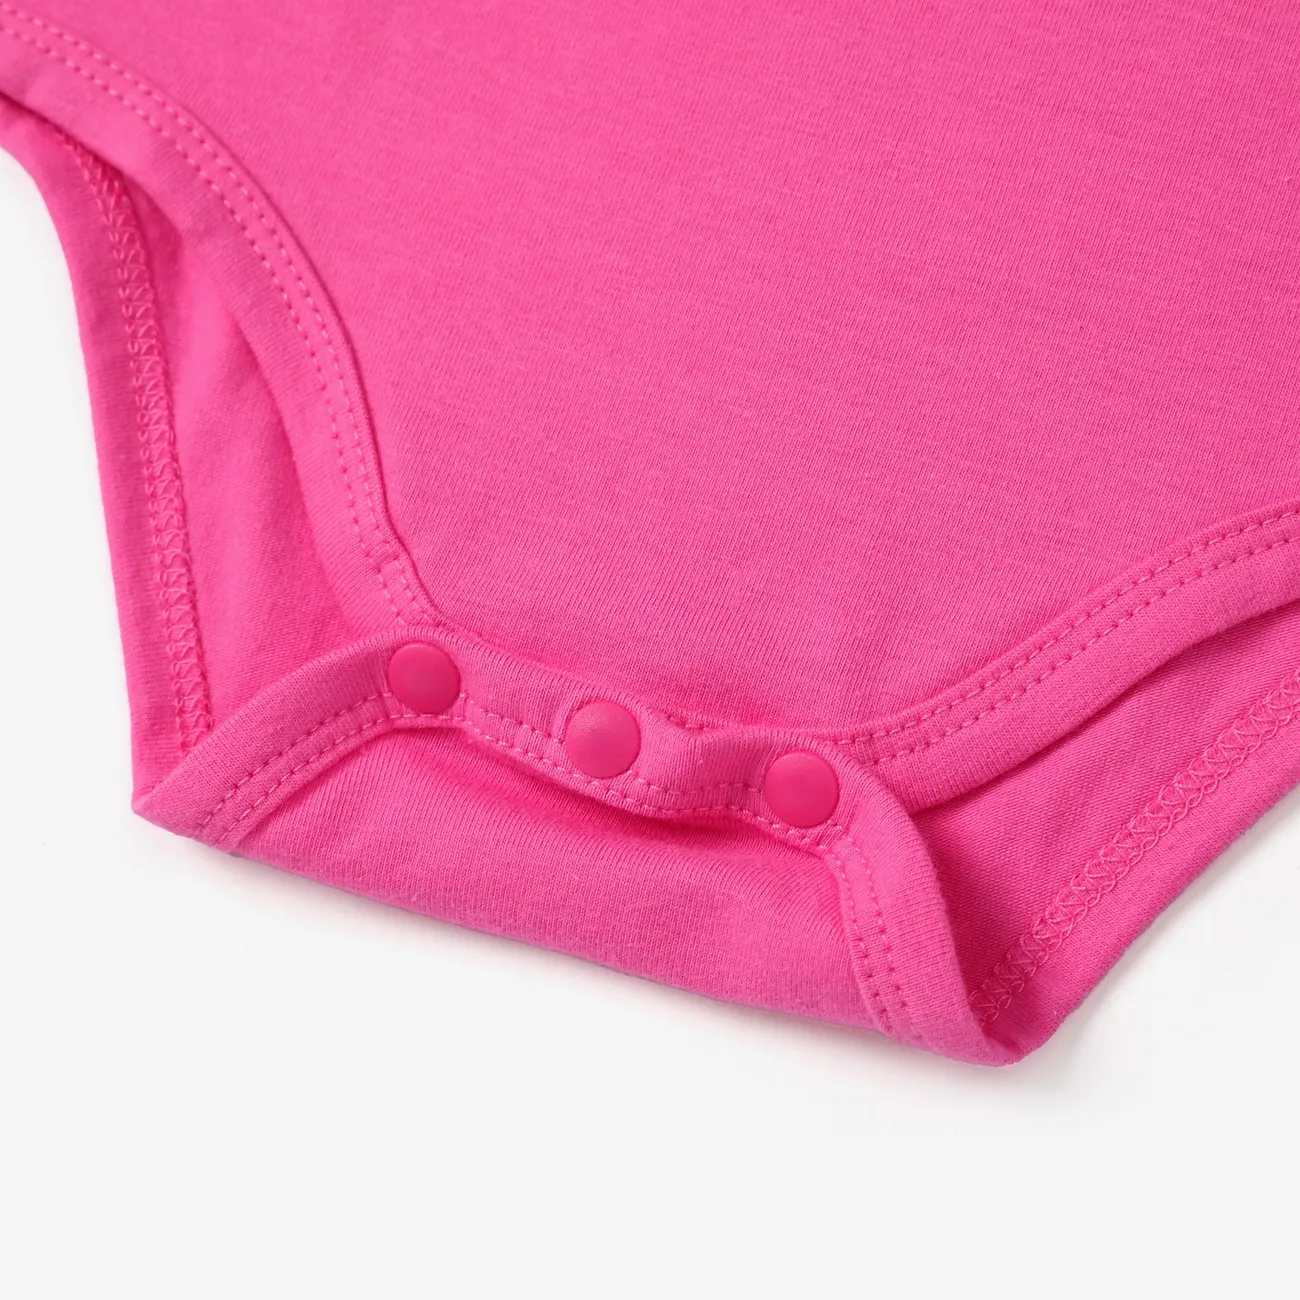 3 unidades Bebé Chica Dulce Camiseta sin mangas Conjuntos de bebé rosado big image 1